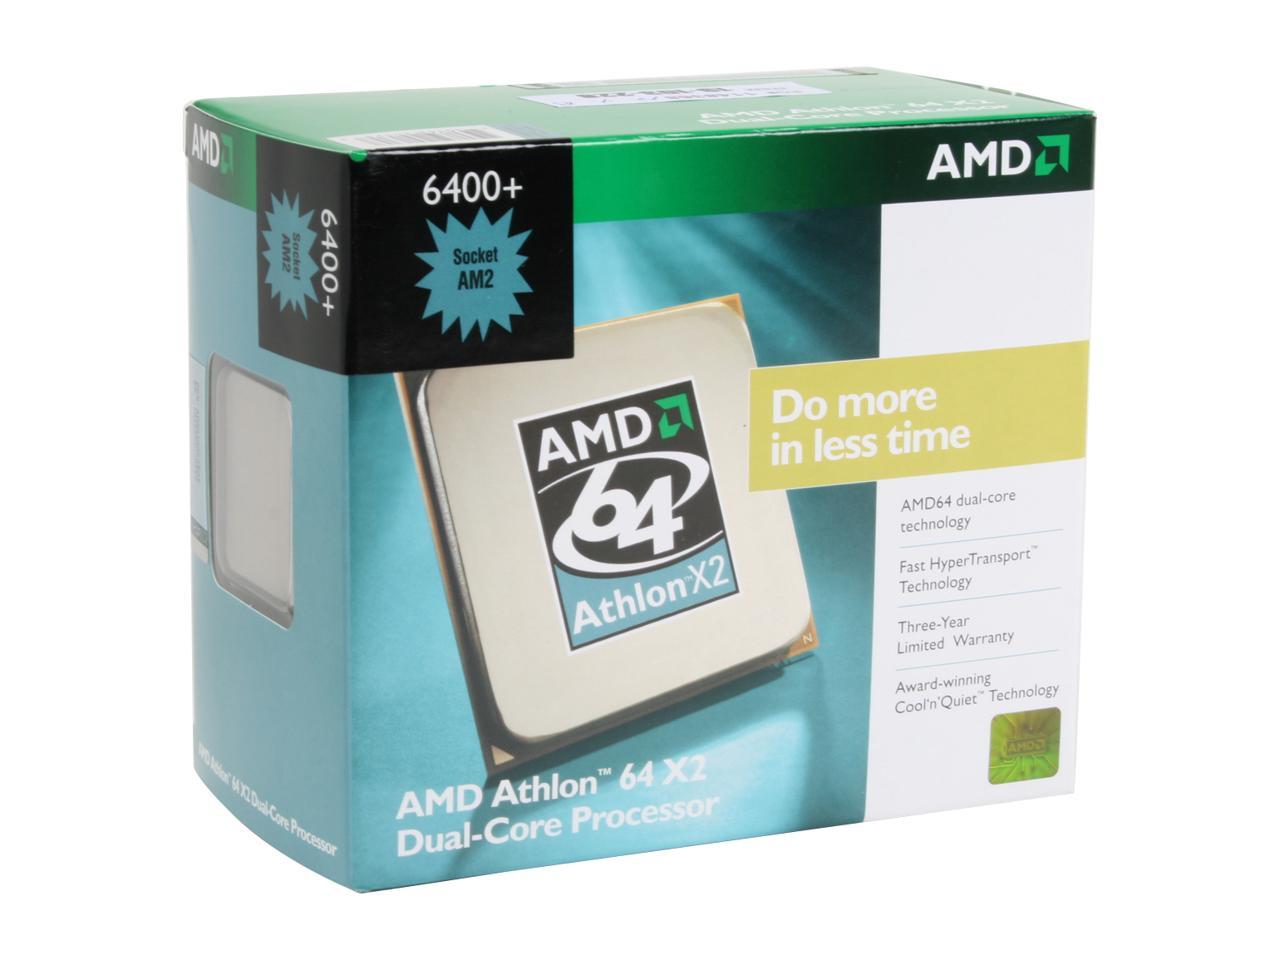 Amd athlon 64 4400. AMD Athlon 64 x2 6400+. AMD Athlon x2 Dual Core. AMD Athlon 64 x2 сокет. AMD Athlon 64 x2 Dual Core 6400+.